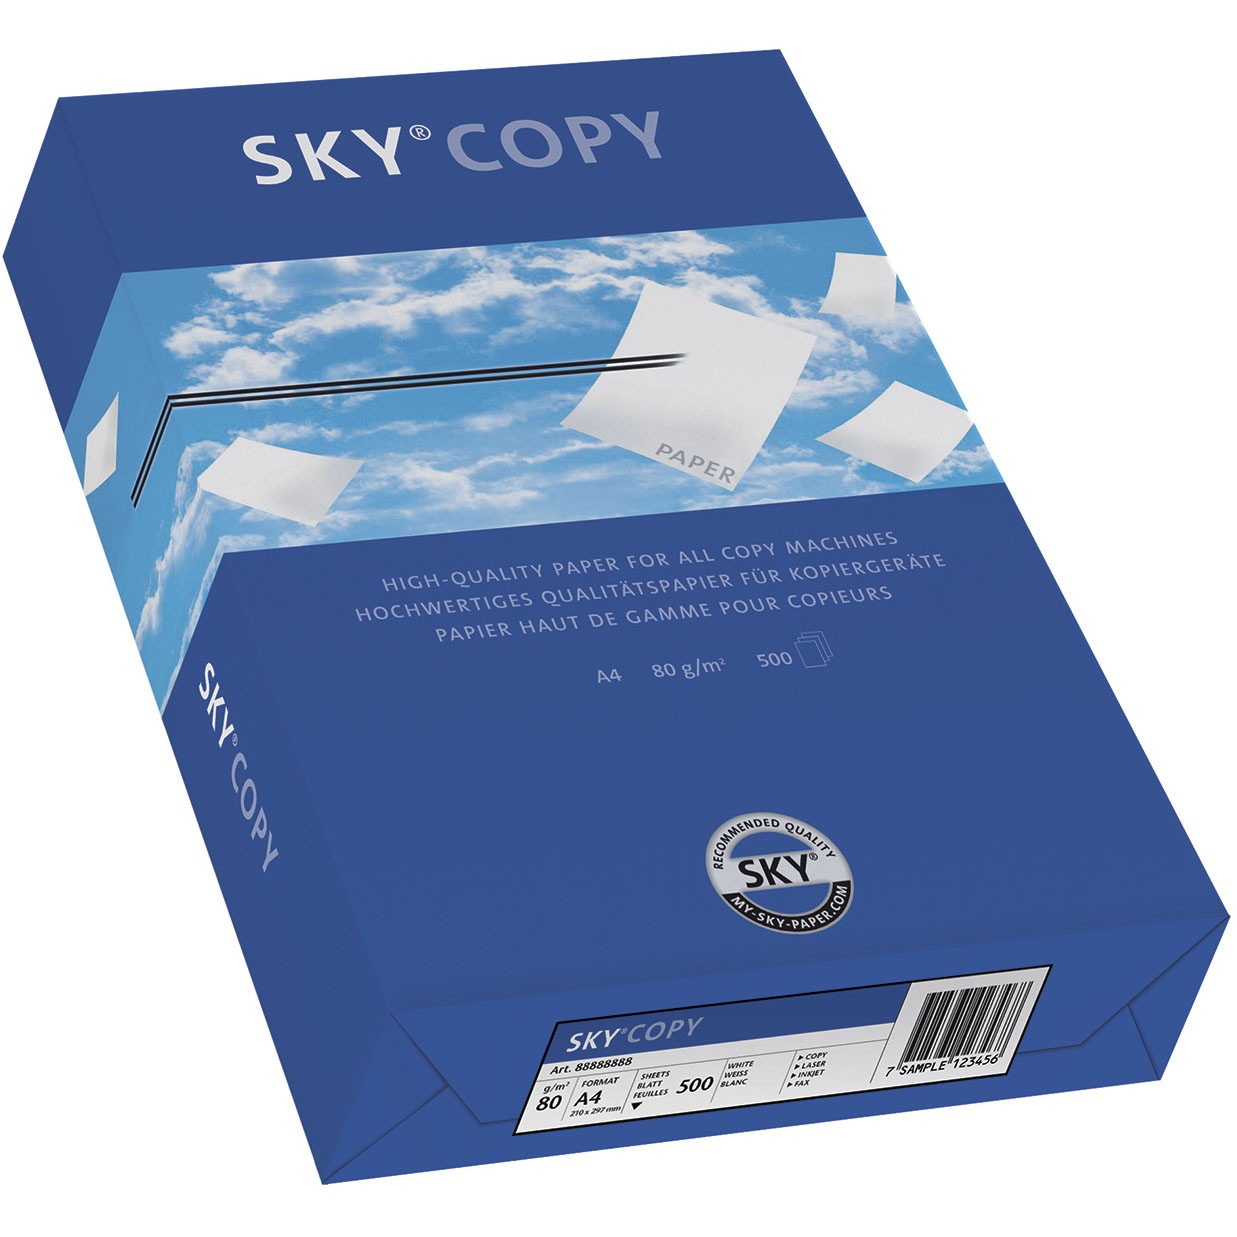 Sky® Copy kopipapir 80g A4 hvid 500 ark